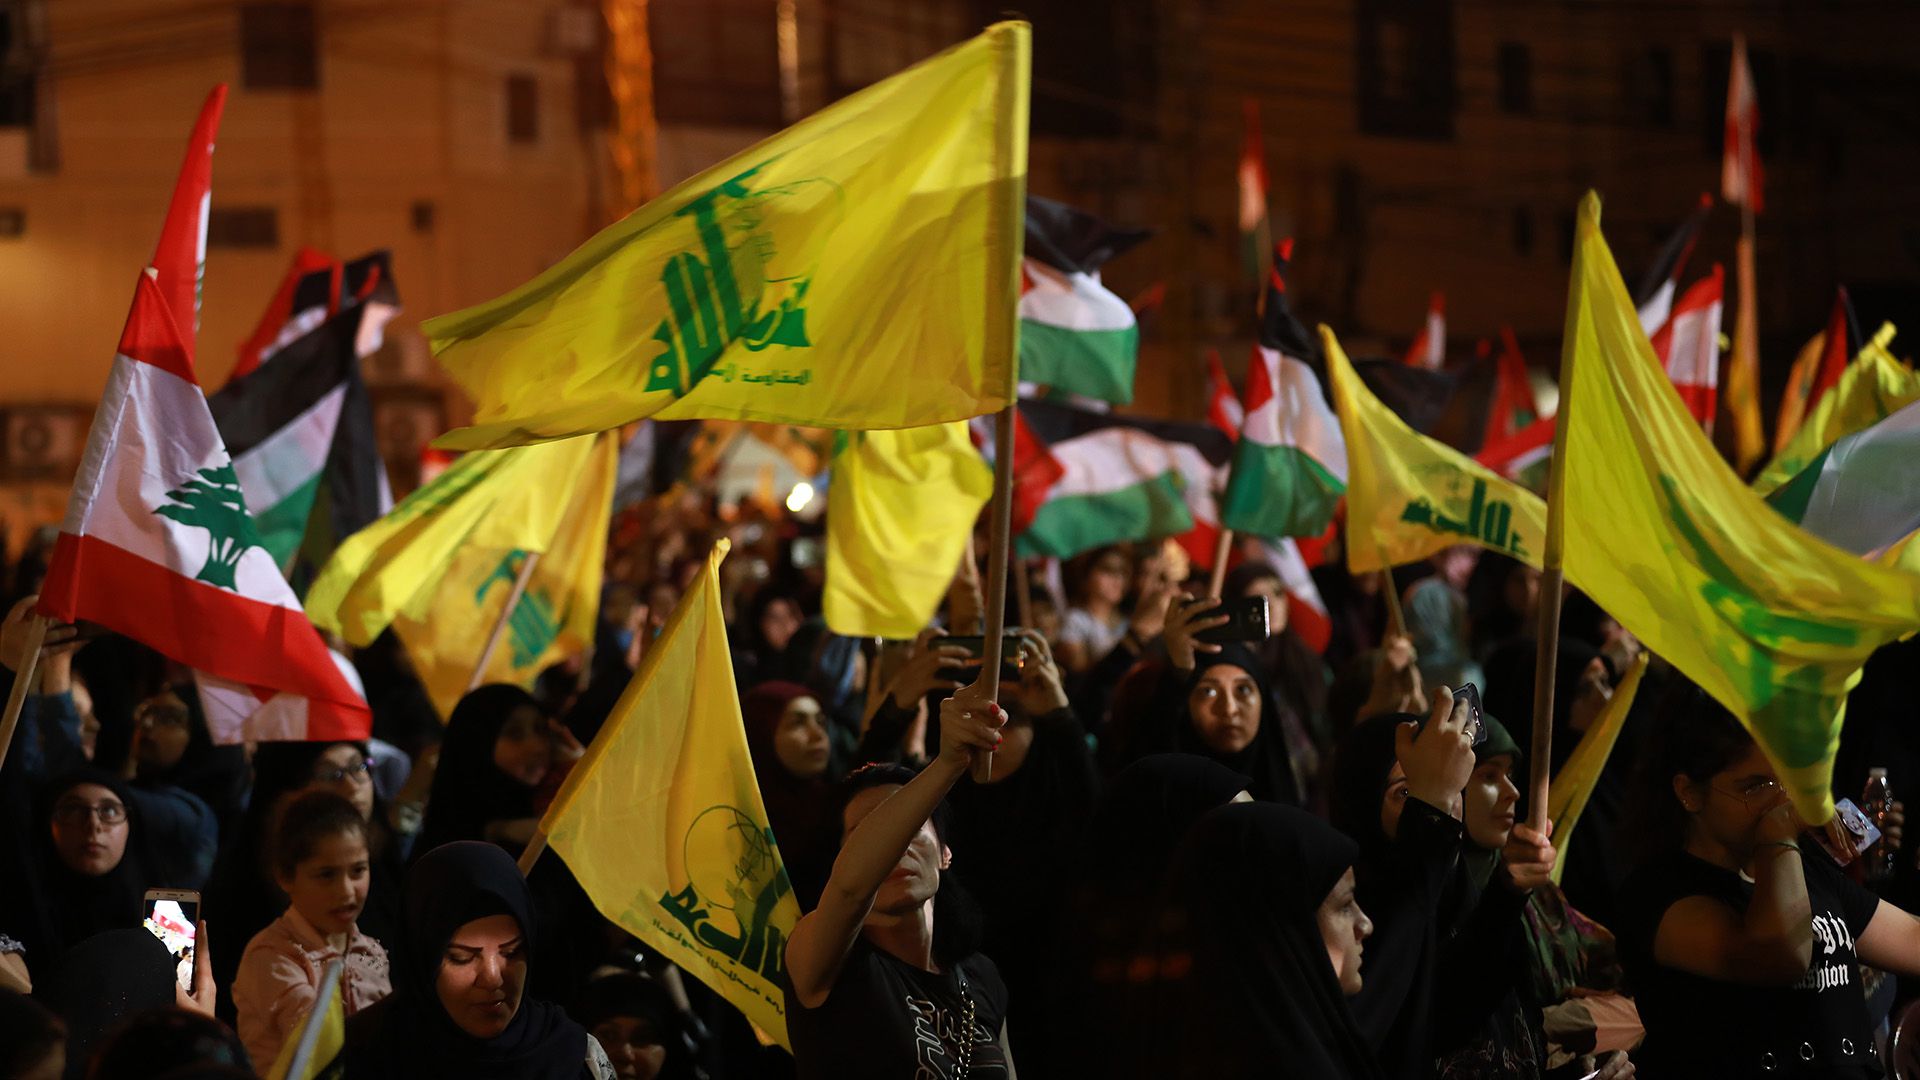 Simpatizantes libaneses del movimiento chiíta Hezbollah ondean banderas nacionales y del partido (amarillas), mientras marchan en un suburbio del sur de Beirut para celebrar el Día Internacional de Al Quds (Jerusalén) el 31 de mayo de 2019 (Photo by Anwar AMRO / AFP)